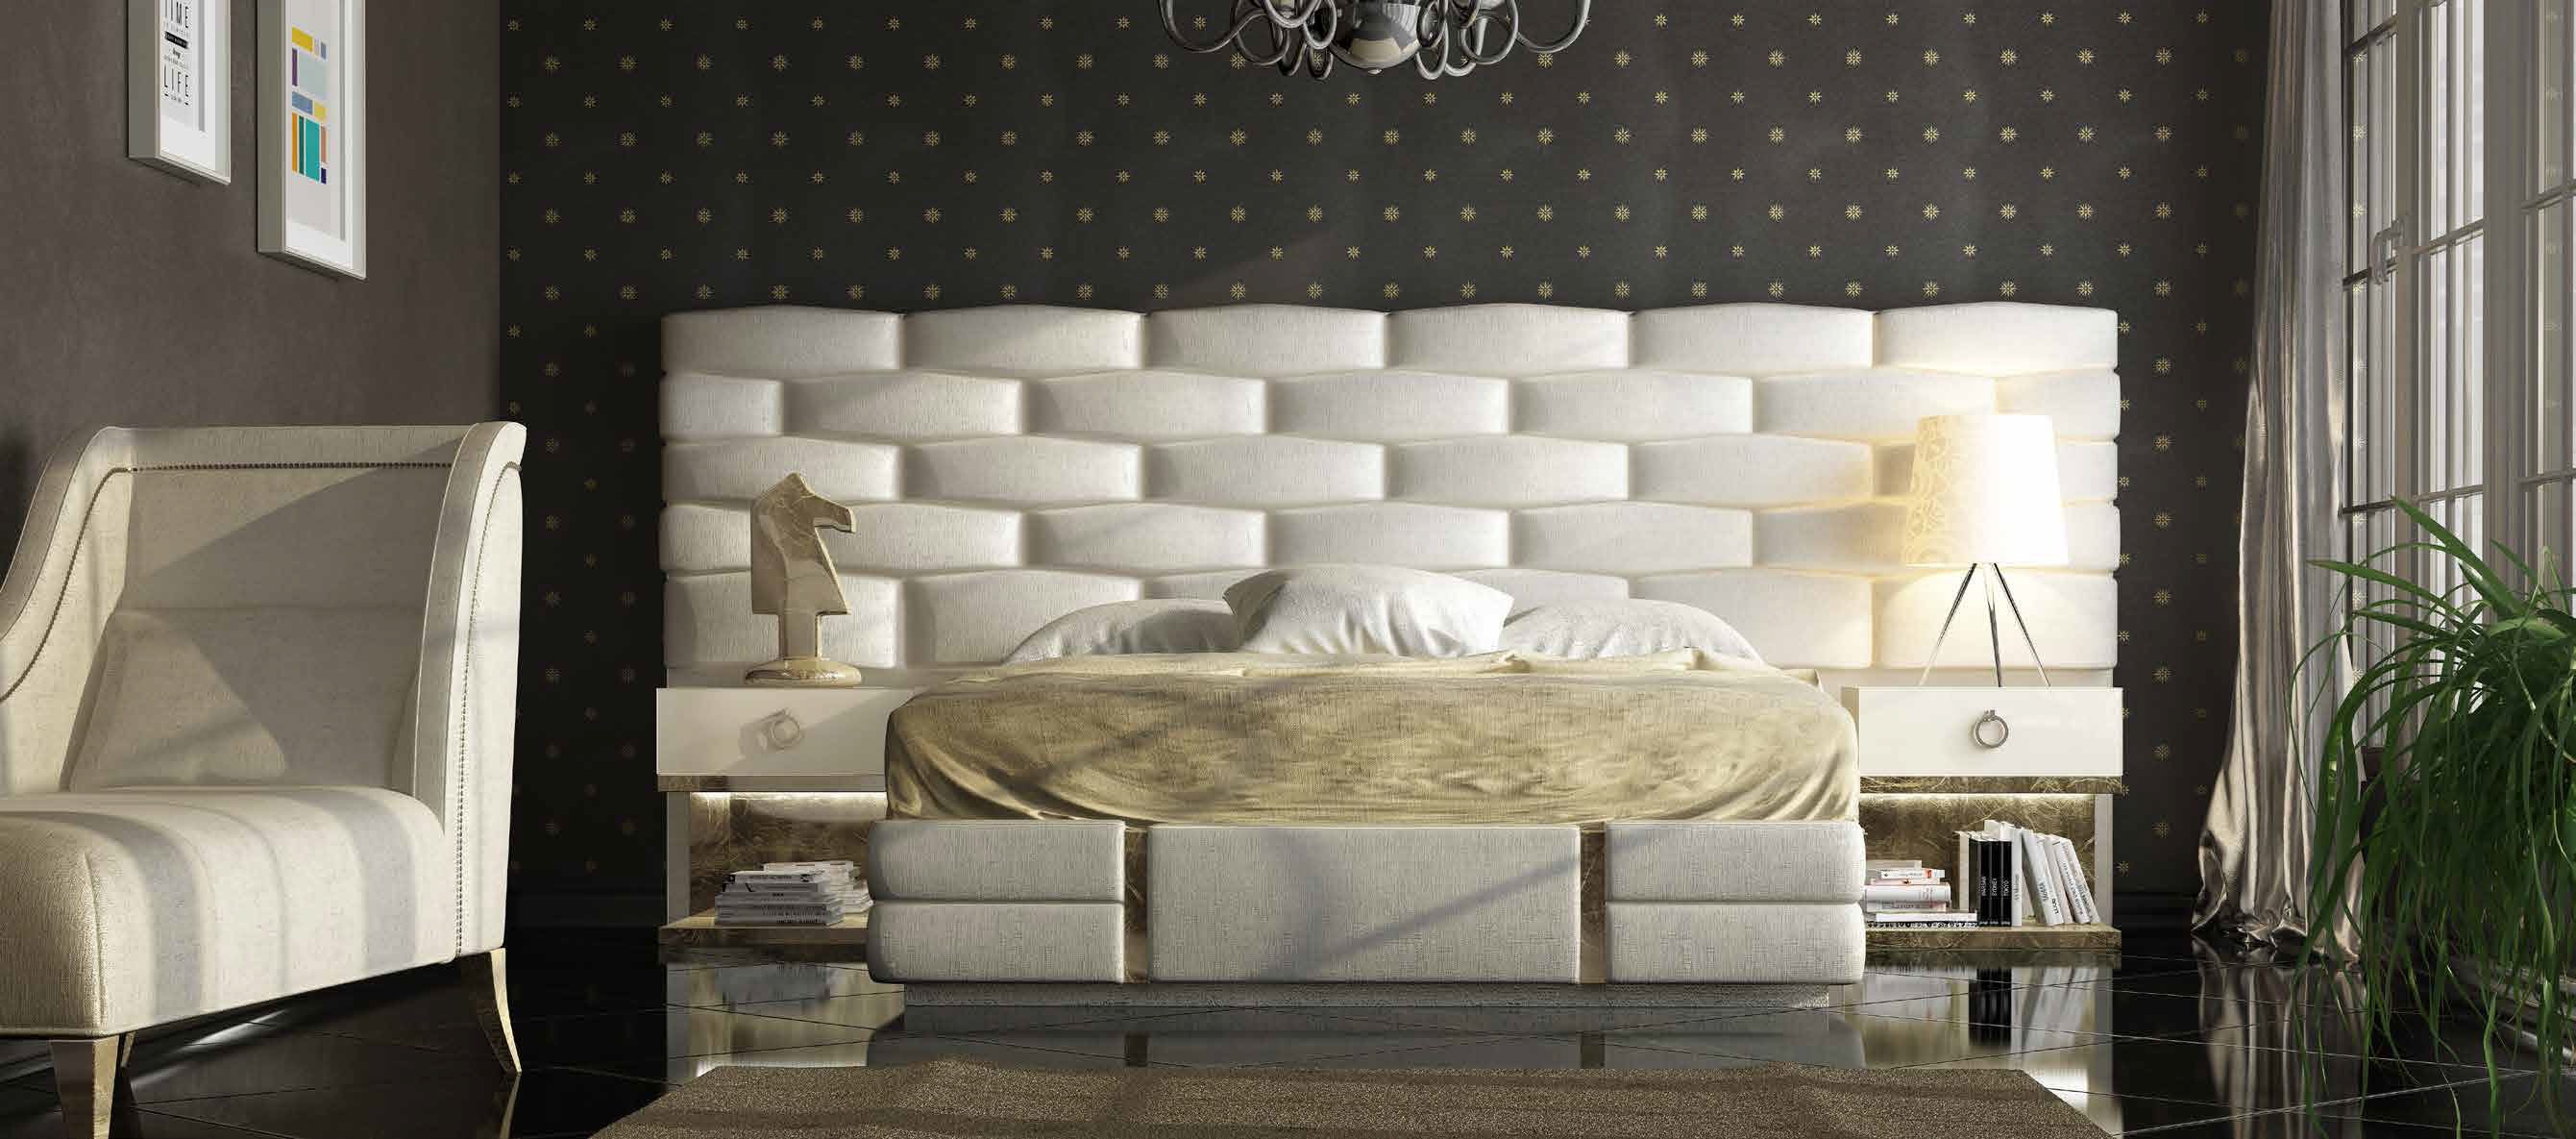 Brands Franco Furniture Avanty Bedrooms, Spain DOR 37